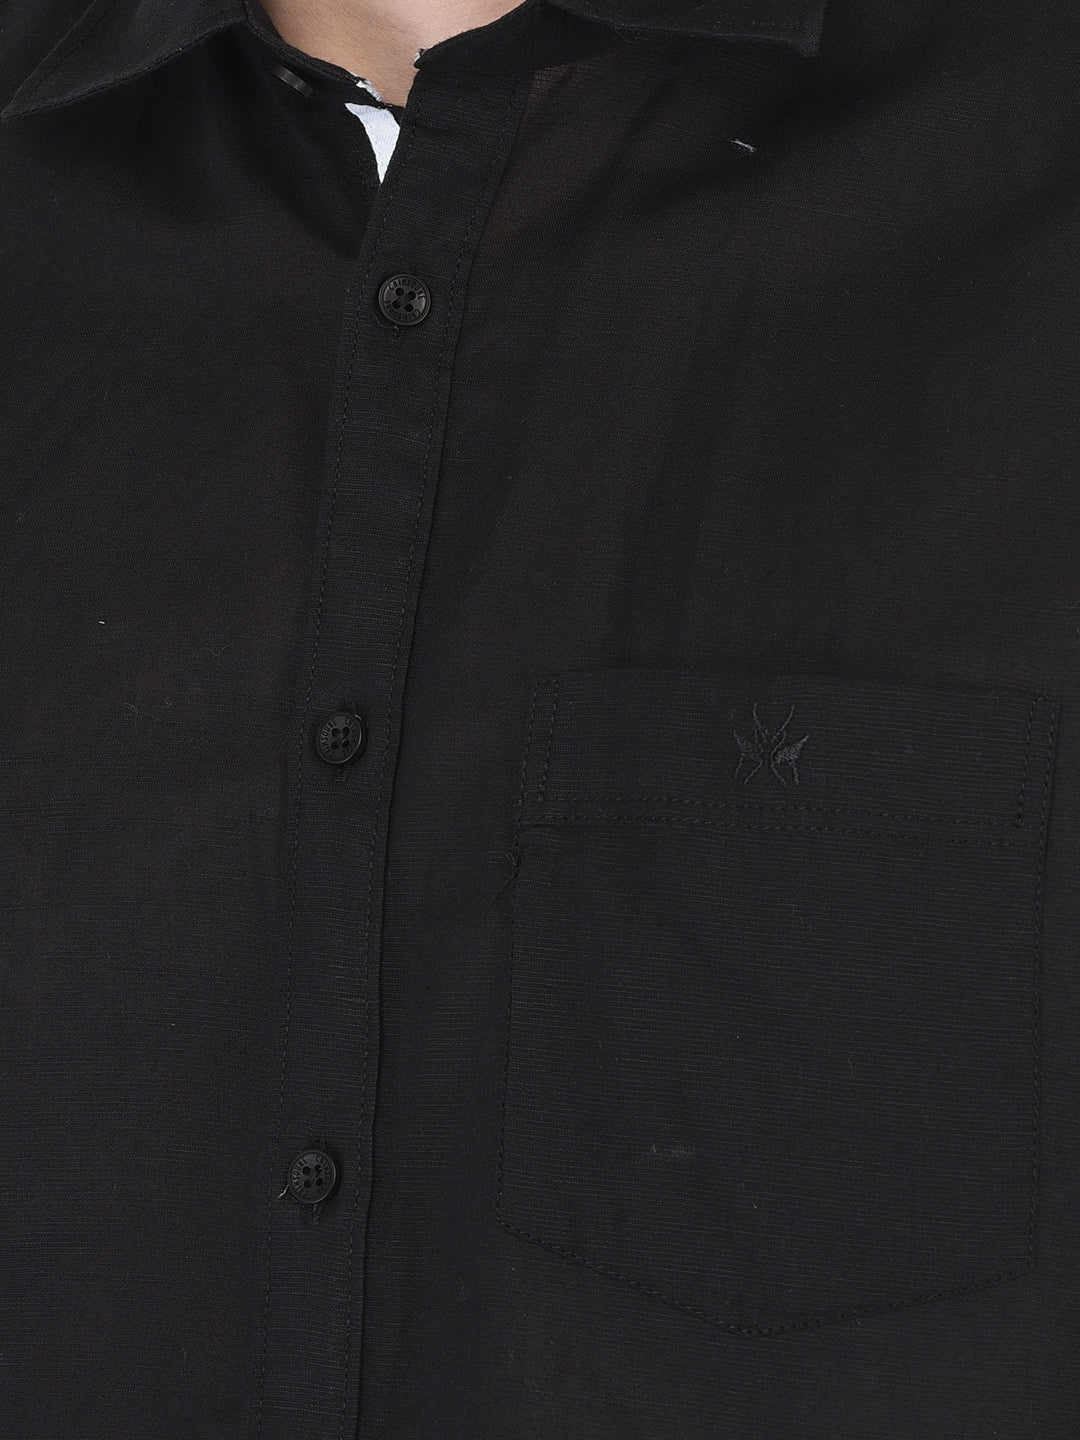 Black Linen Shirt - Men Shirts